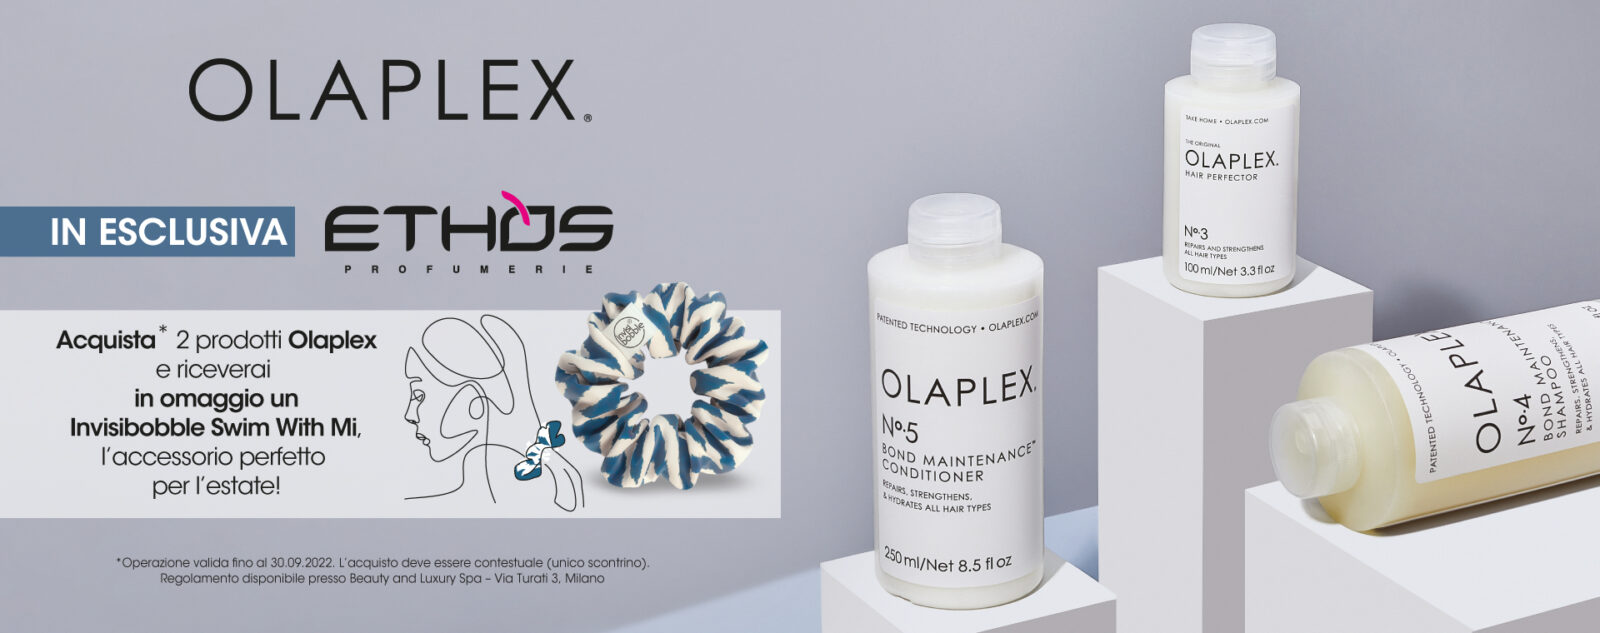 Olaplex Promo